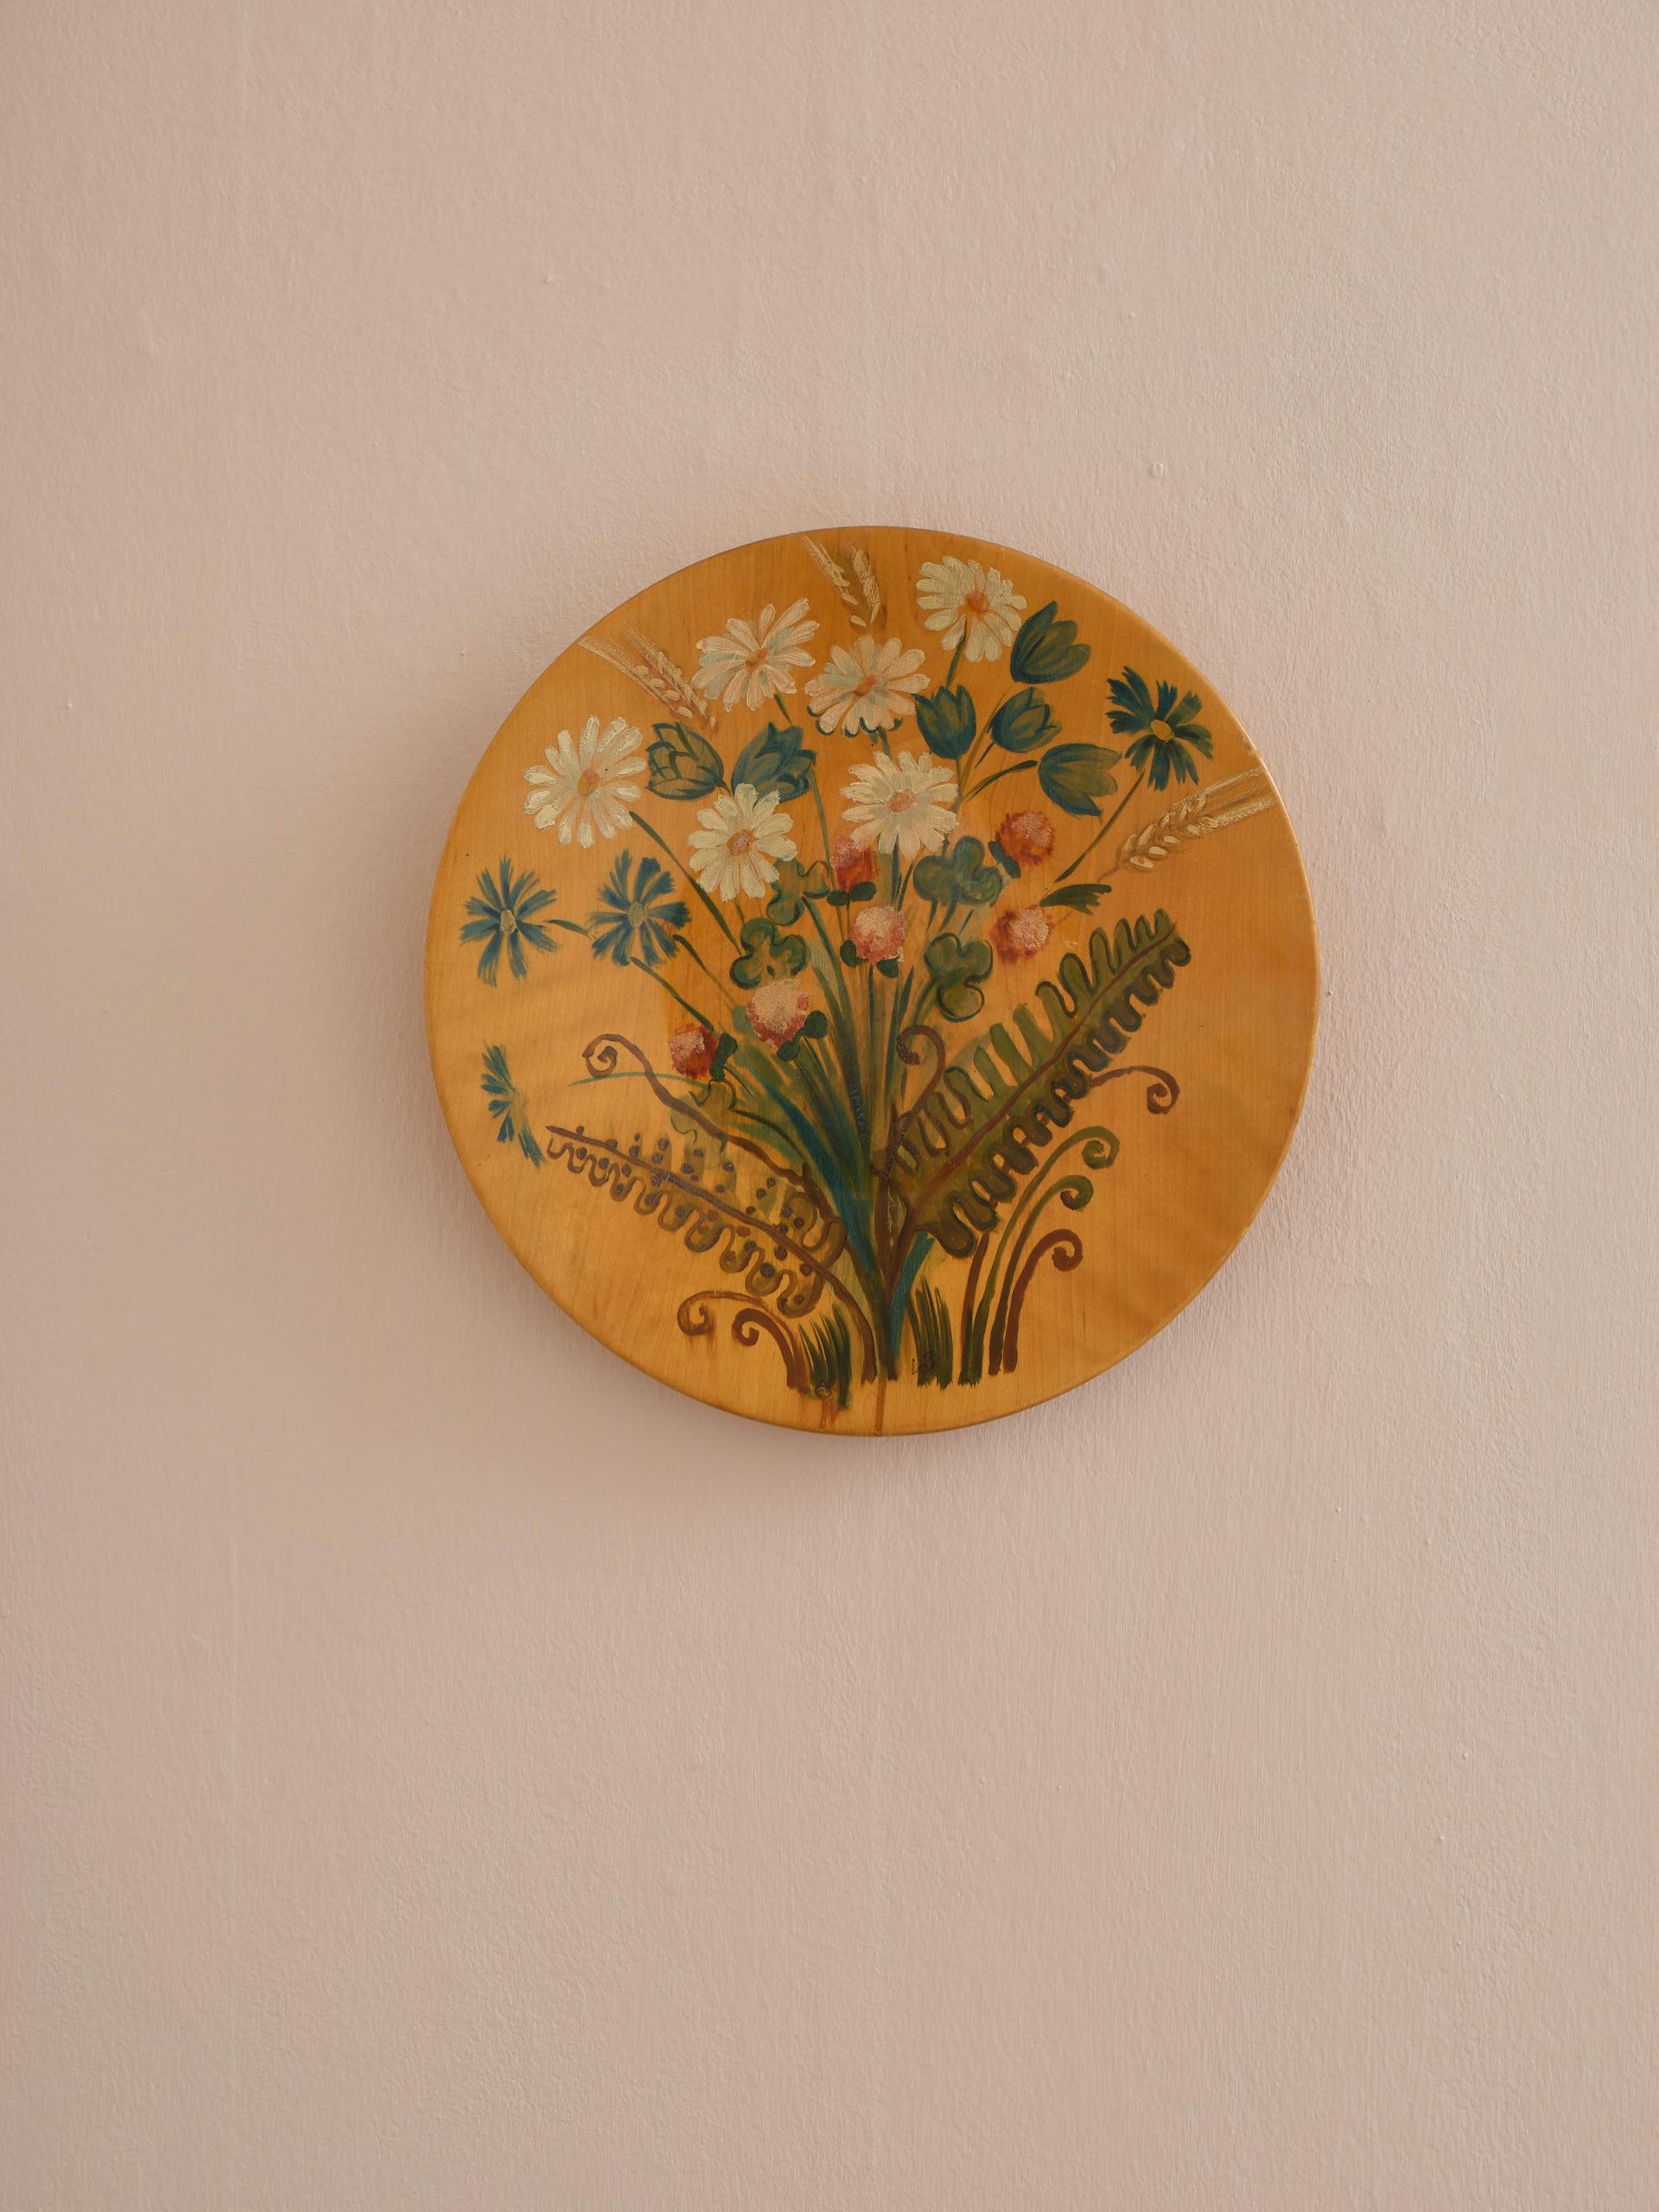 Einzigartige Wanddekoration oder Schale aus lackiertem Holz, handbemalt mit botanischen Motiven in beruhigenden Farben. Auf der Rückseite vom Künstler signiert.

Durchmesser: 32 cm (12.6 in) // Höhe: 5 cm (1.97 in).